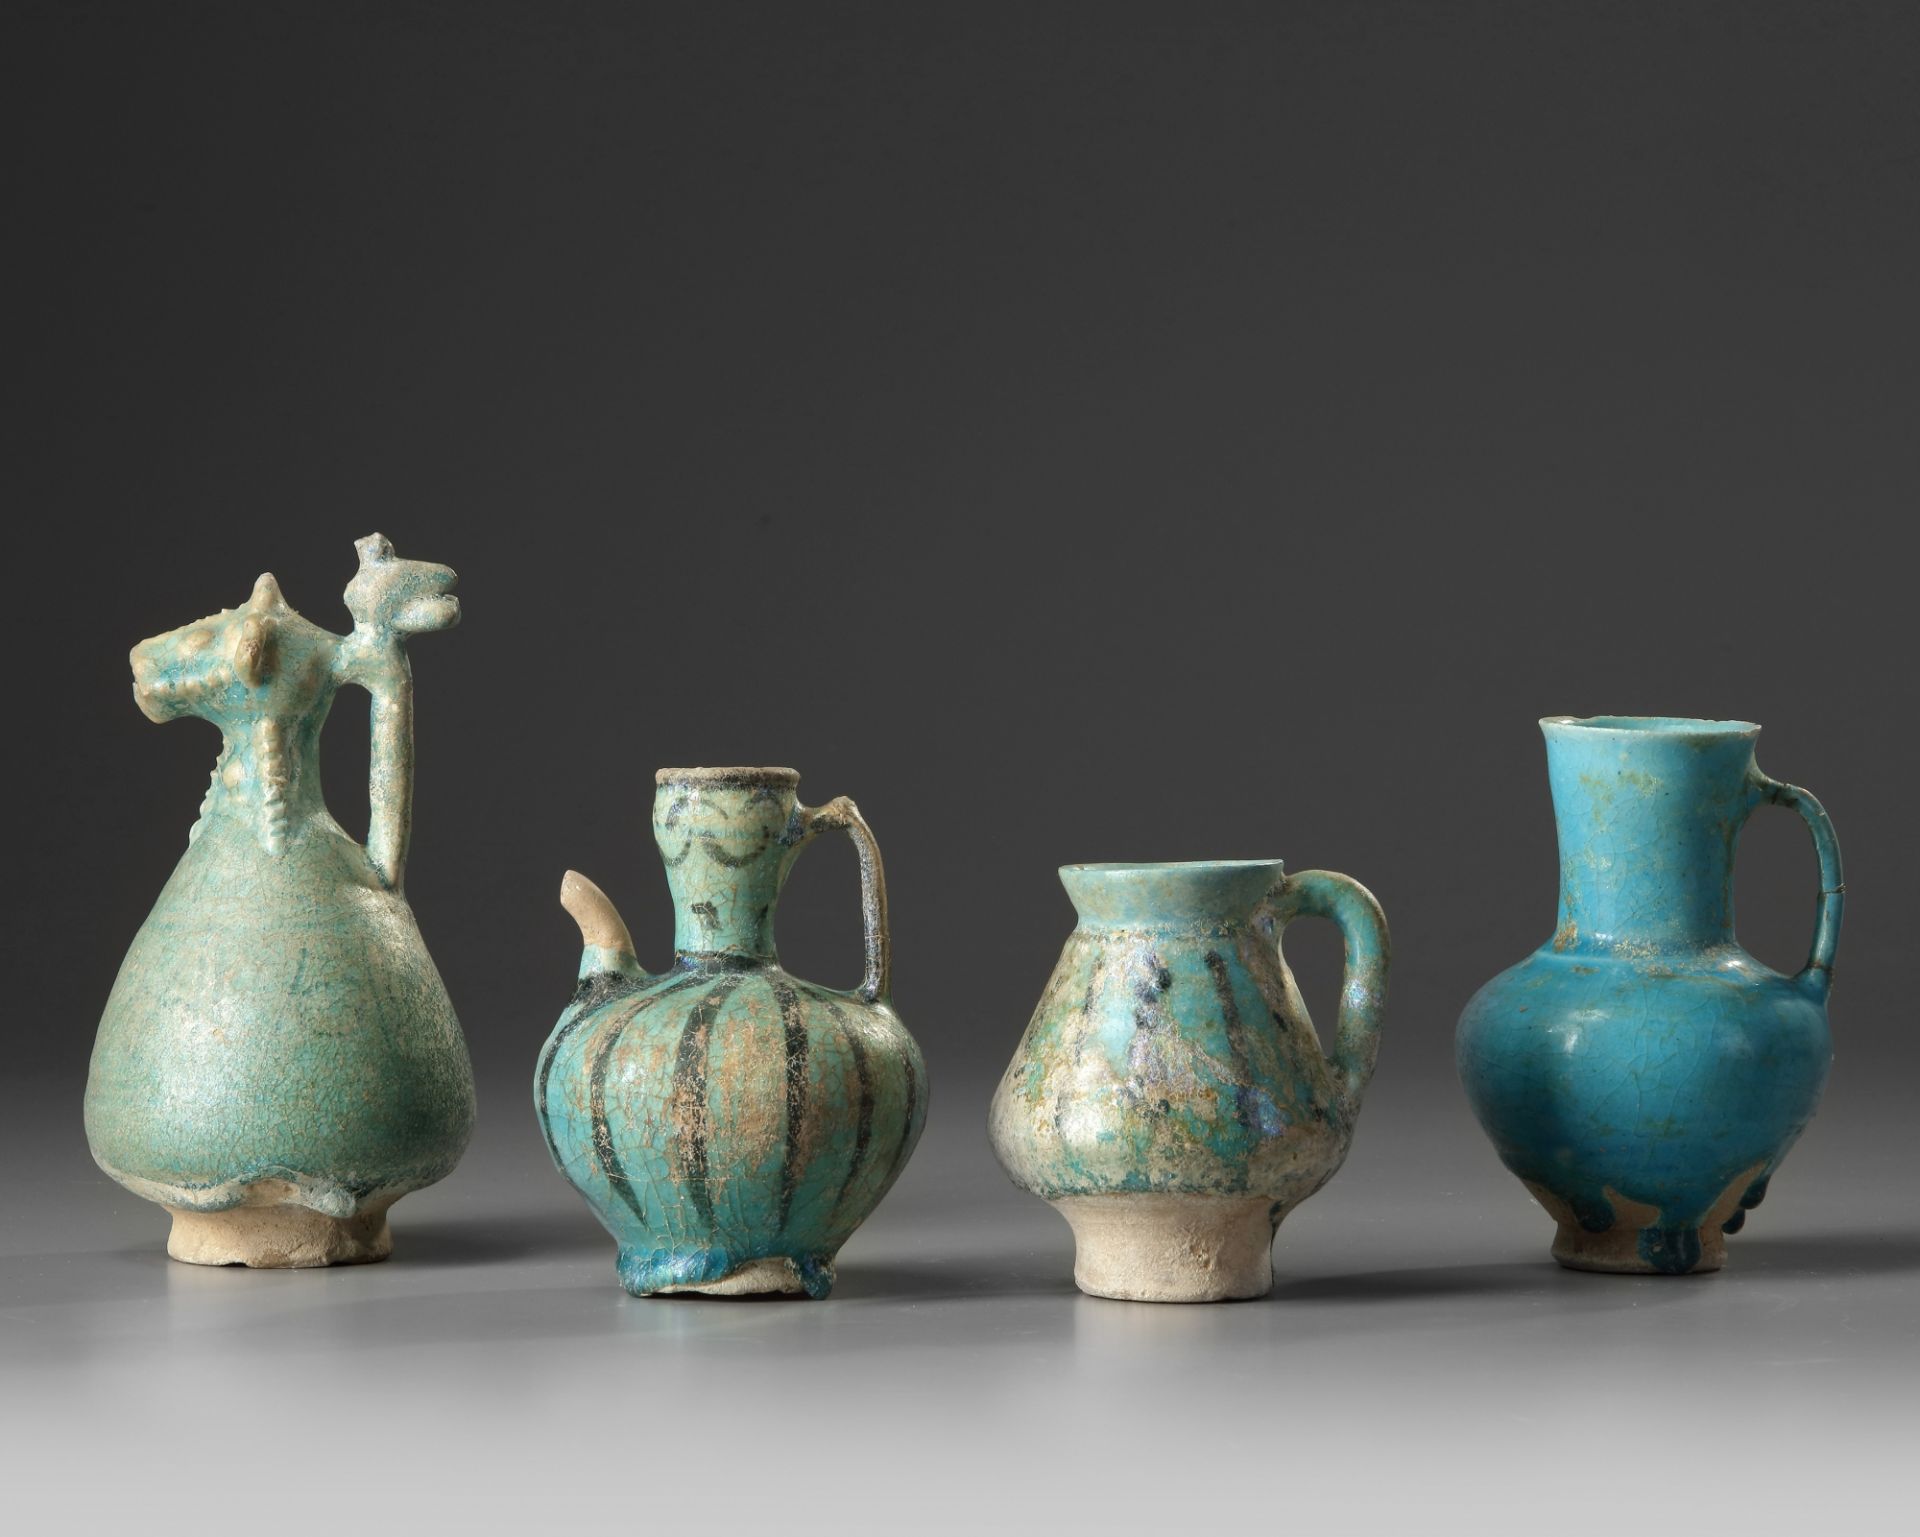 Four Islamic turquoise glazed jugs - Image 2 of 2